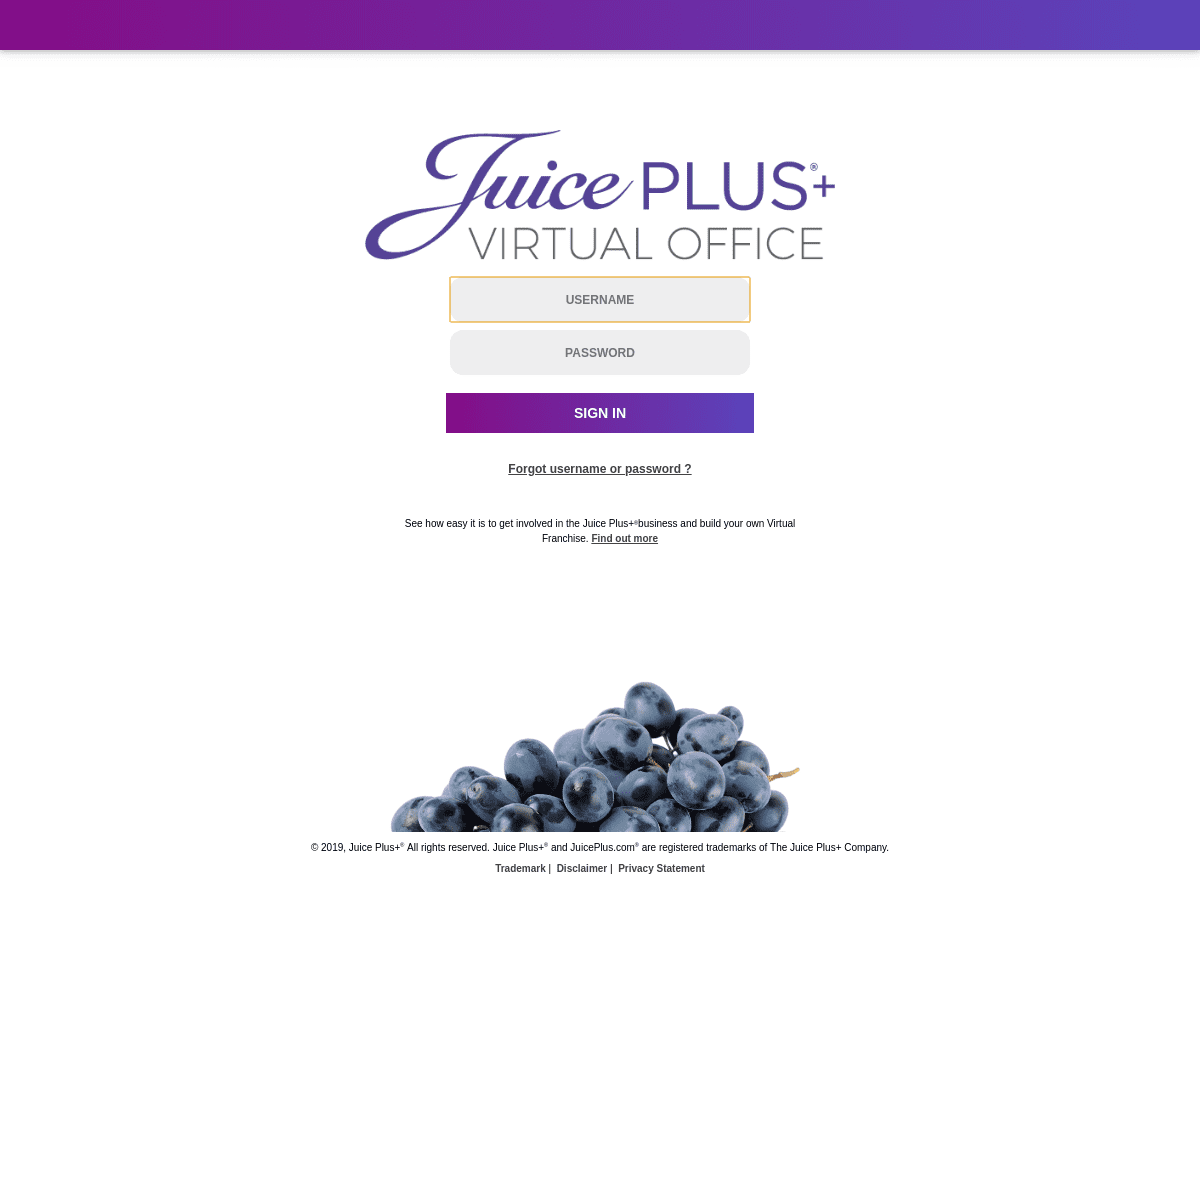 A complete backup of juiceplusvirtualoffice.com